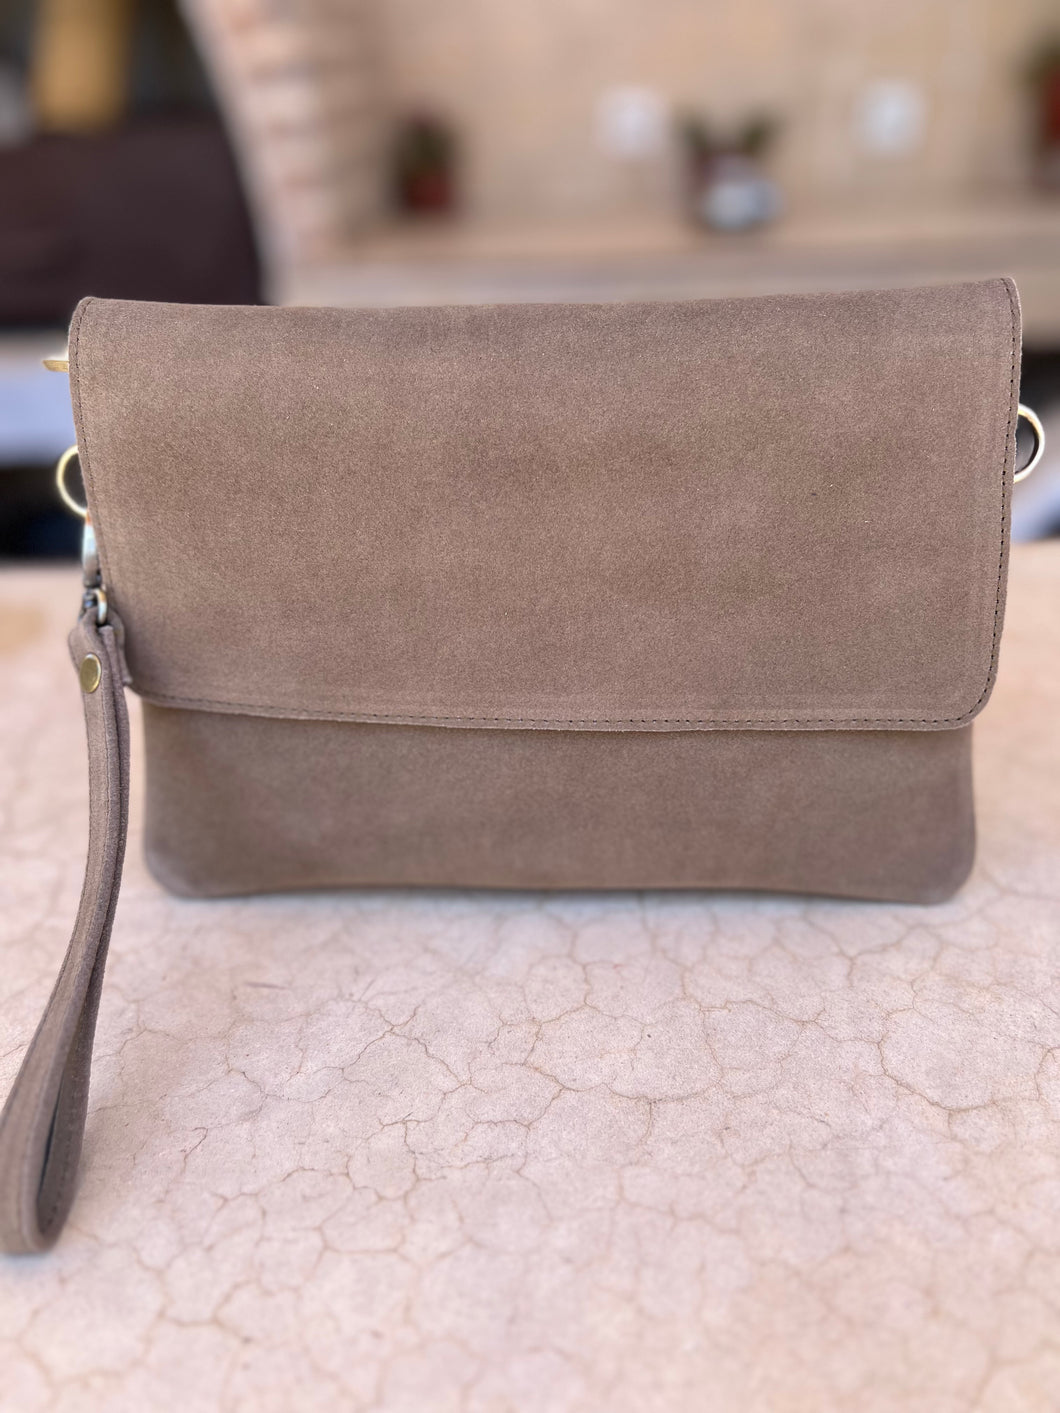 Classic Handbag | Taupe Suede | Medium